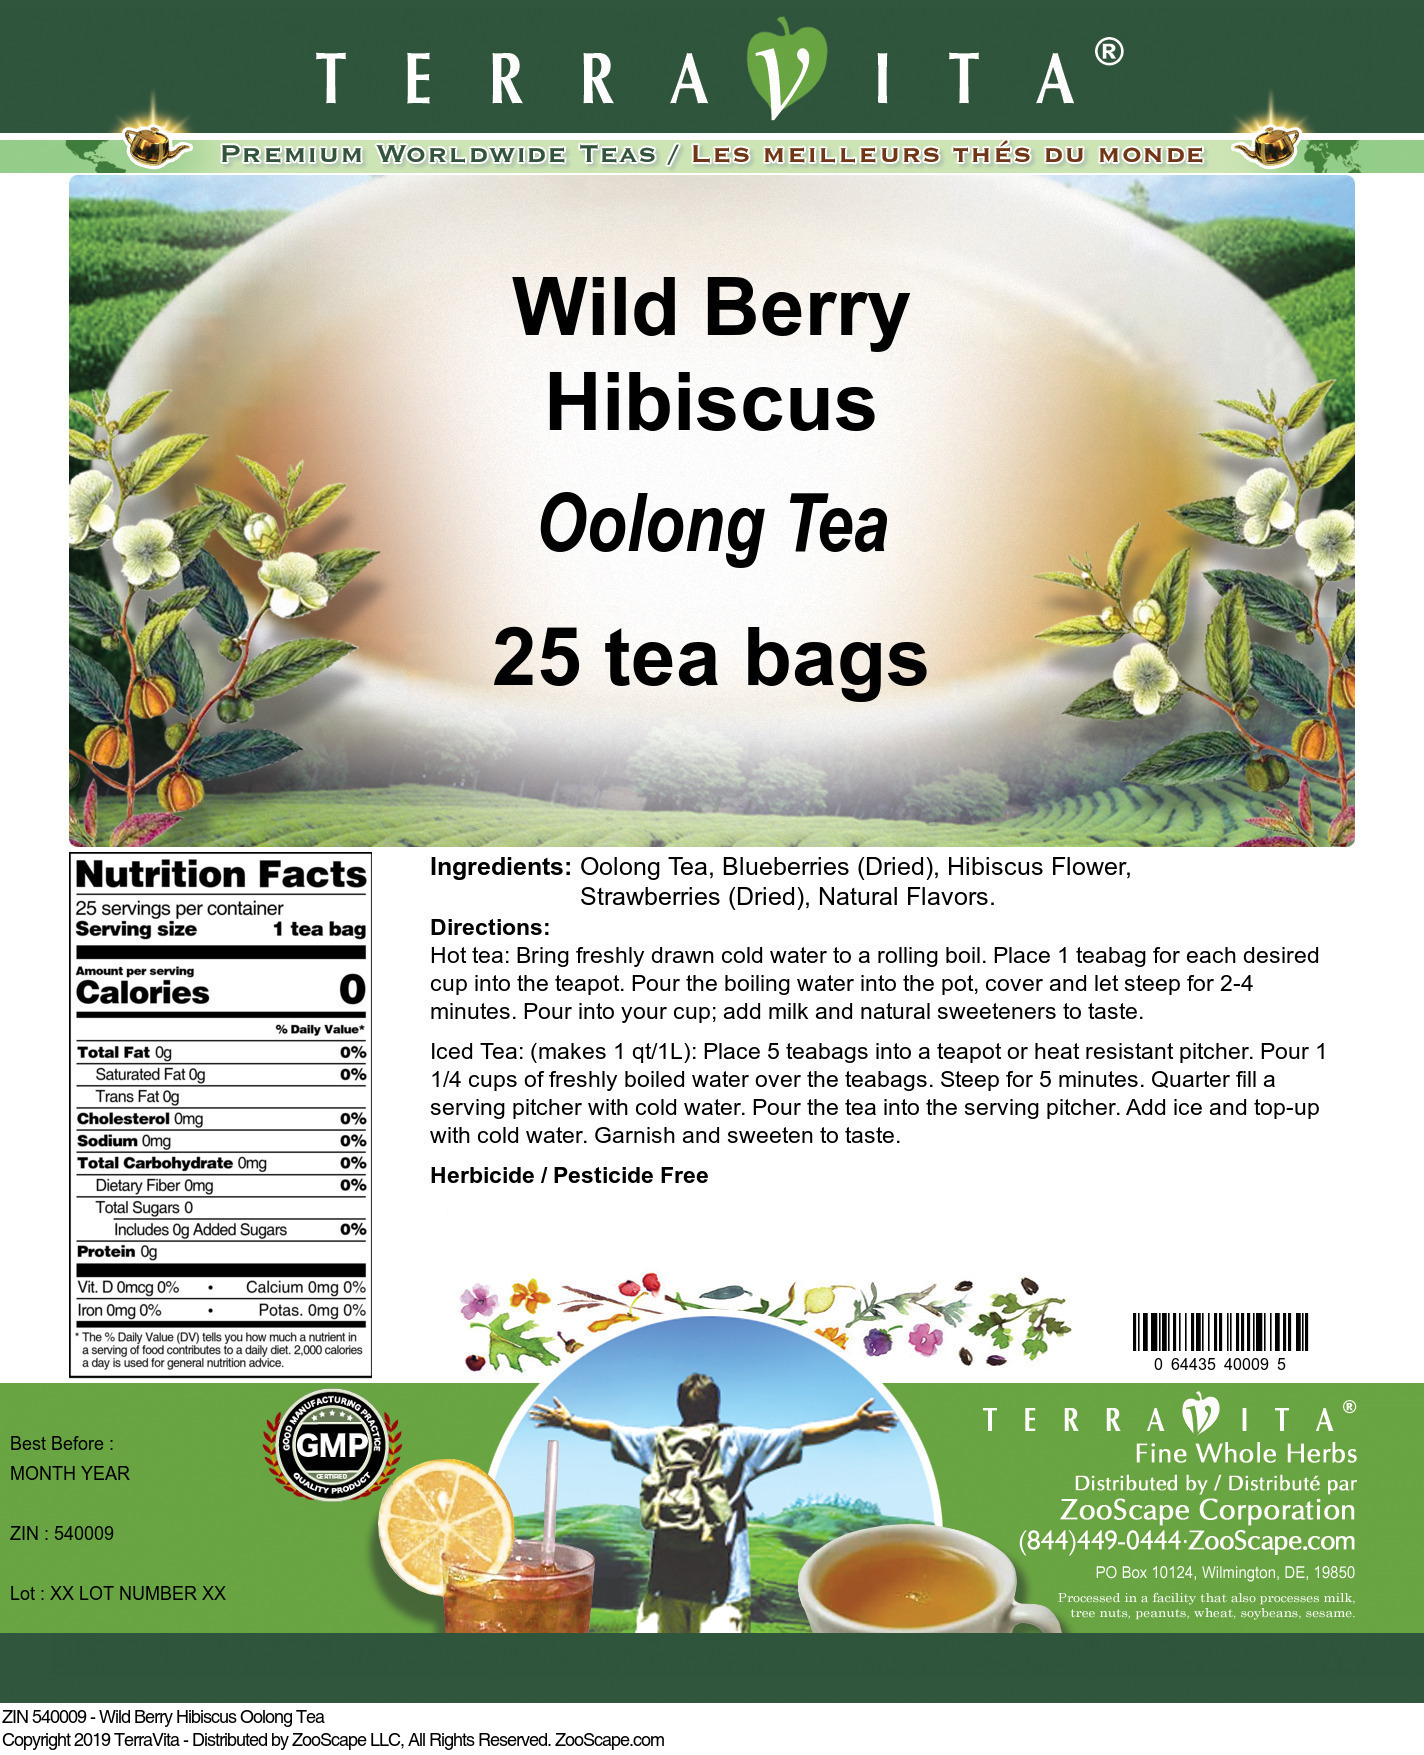 Wild Berry Hibiscus Oolong Tea - Label